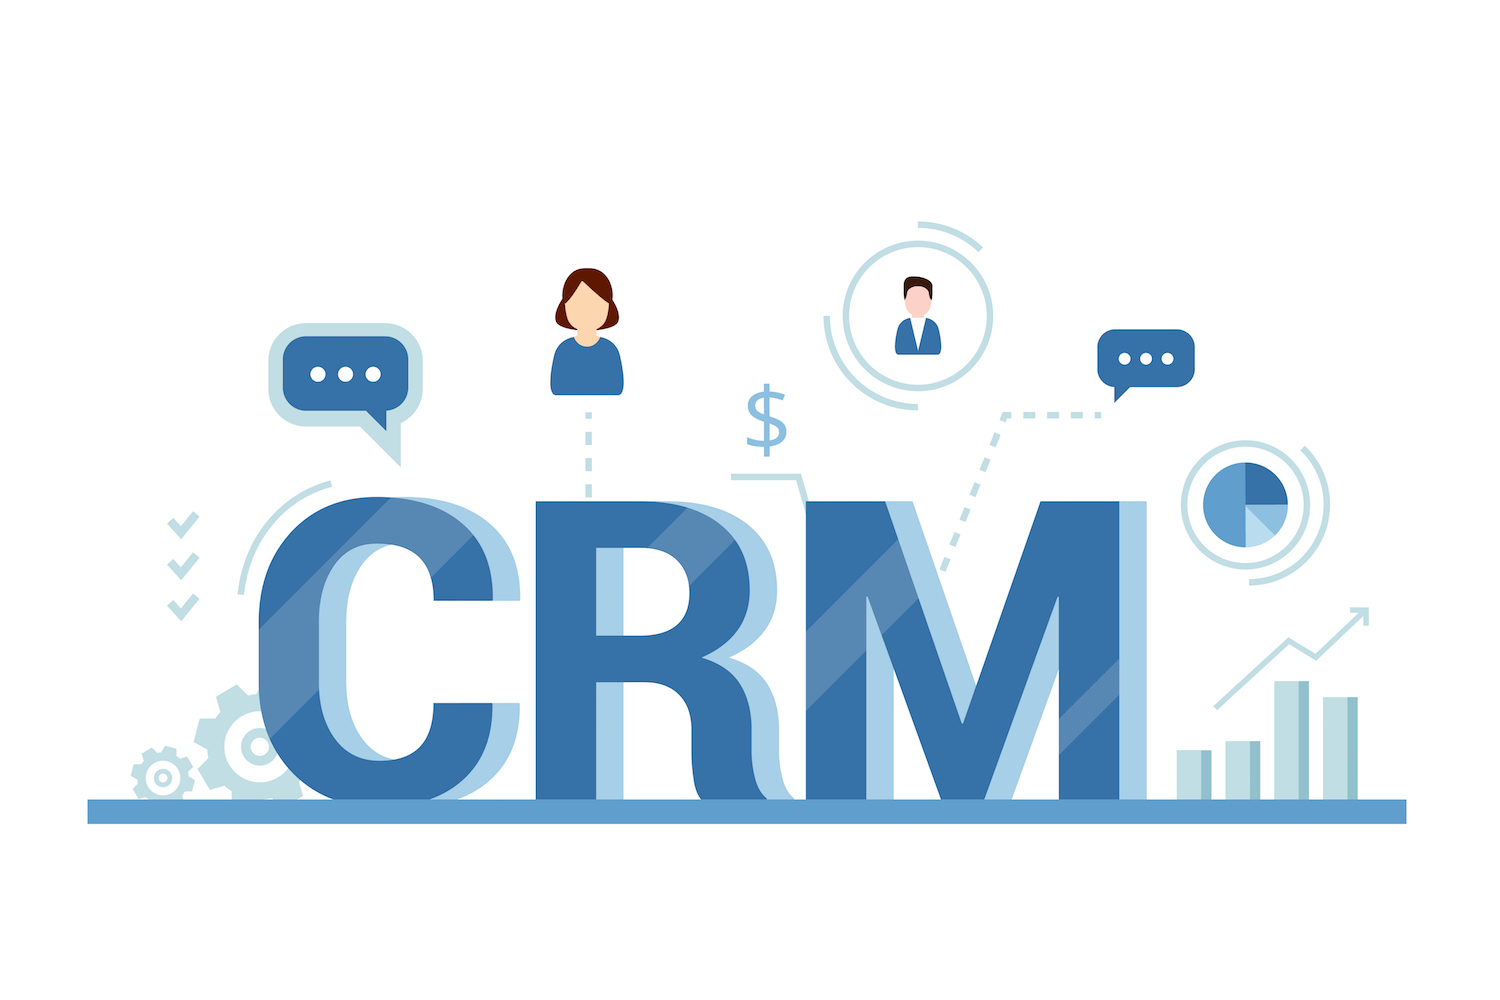 کسب و کارهای کوچک چگونه از نرم افزار CRM استفاده می کنند؟ و تفاوت نرم افزار CRM برای کسب وکارهای بزرگ و کوچک